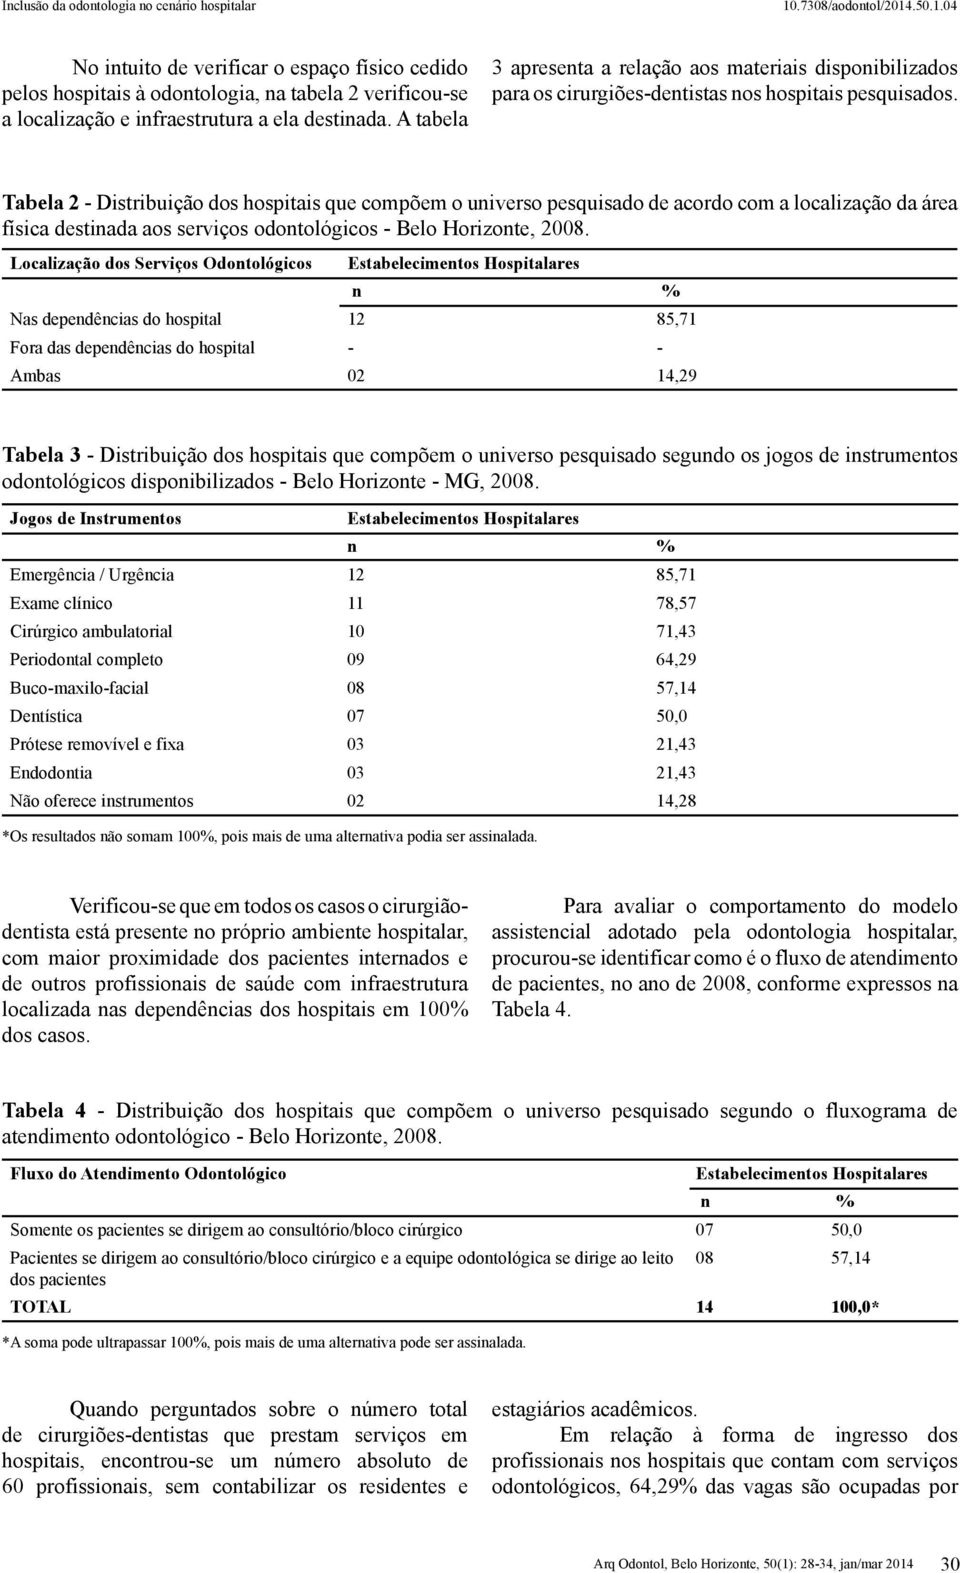 Tabela 2 - Distribuição dos hospitais que compõem o universo pesquisado de acordo com a localização da área física destinada aos serviços odontológicos - Belo Horizonte, 2008.